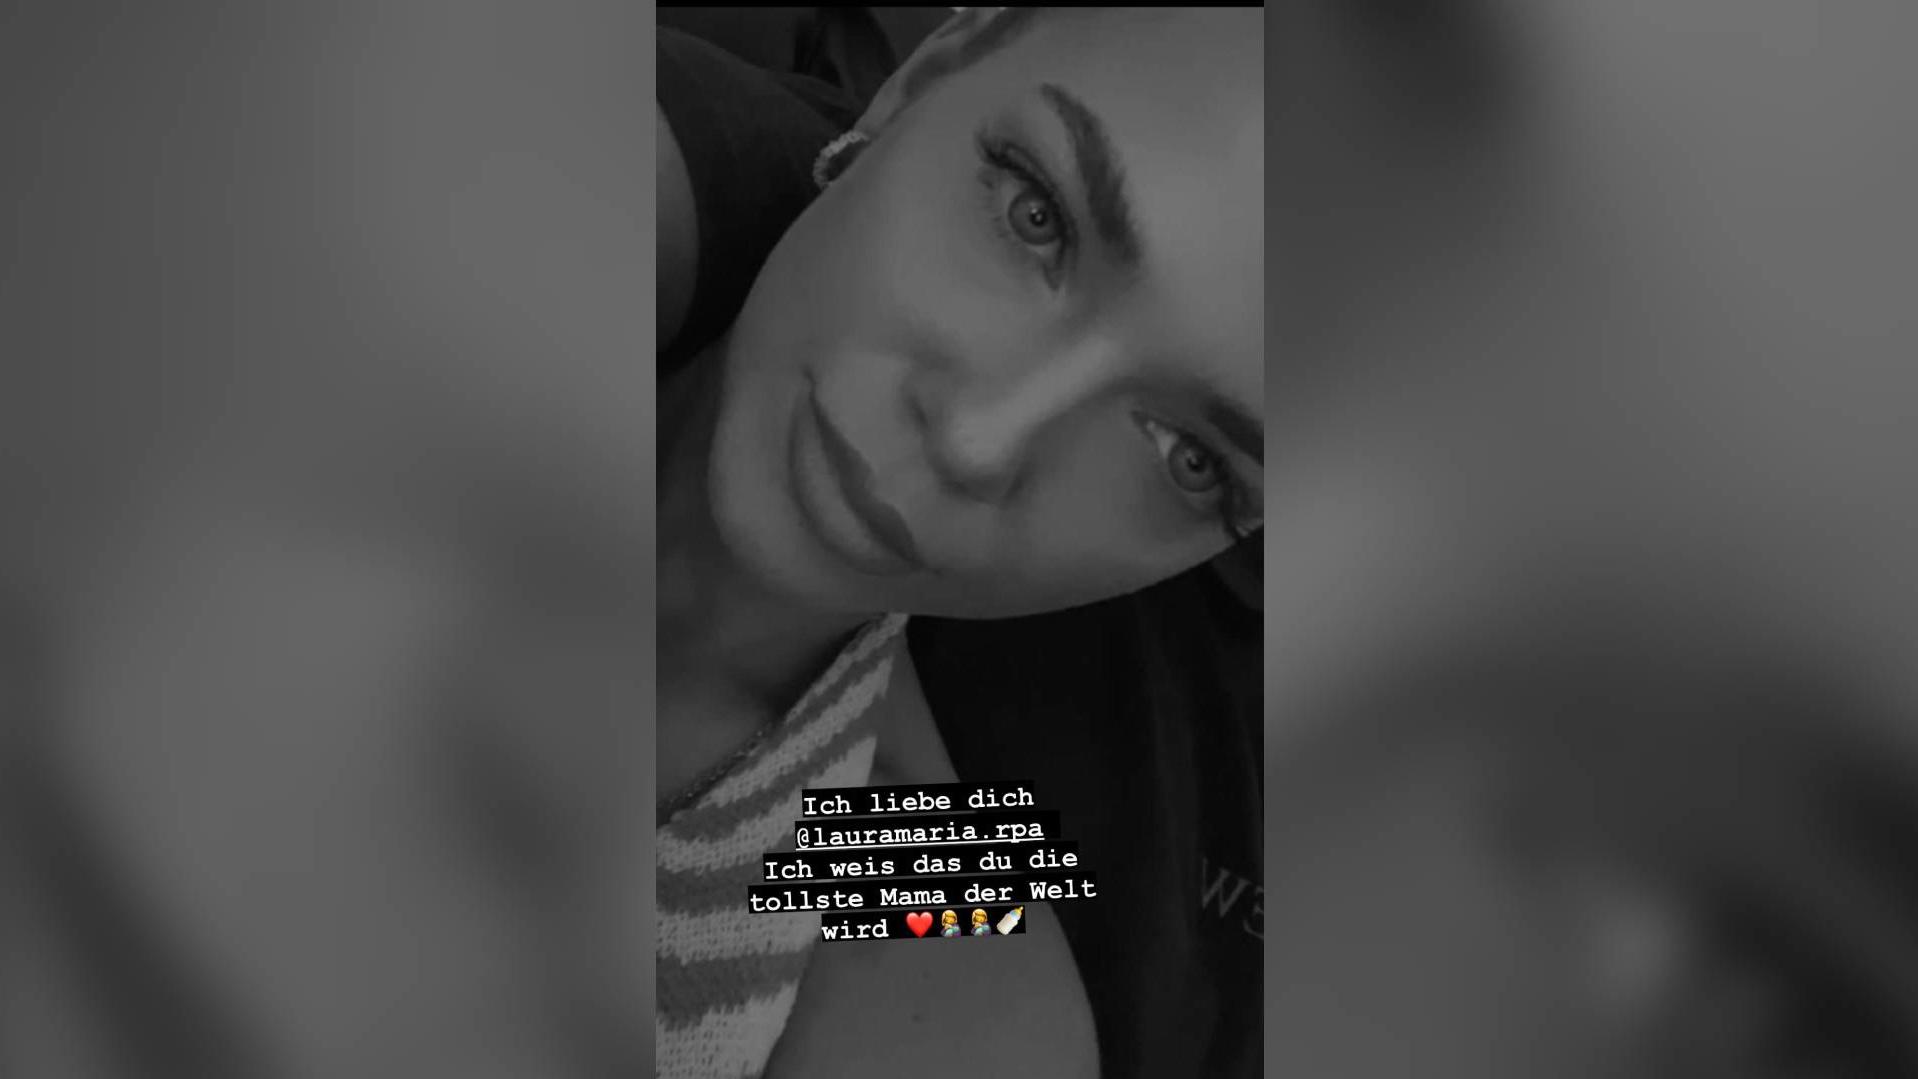 In seiner Instagram-Story richtet Pietro liebevolle Worte an die werdende Mama